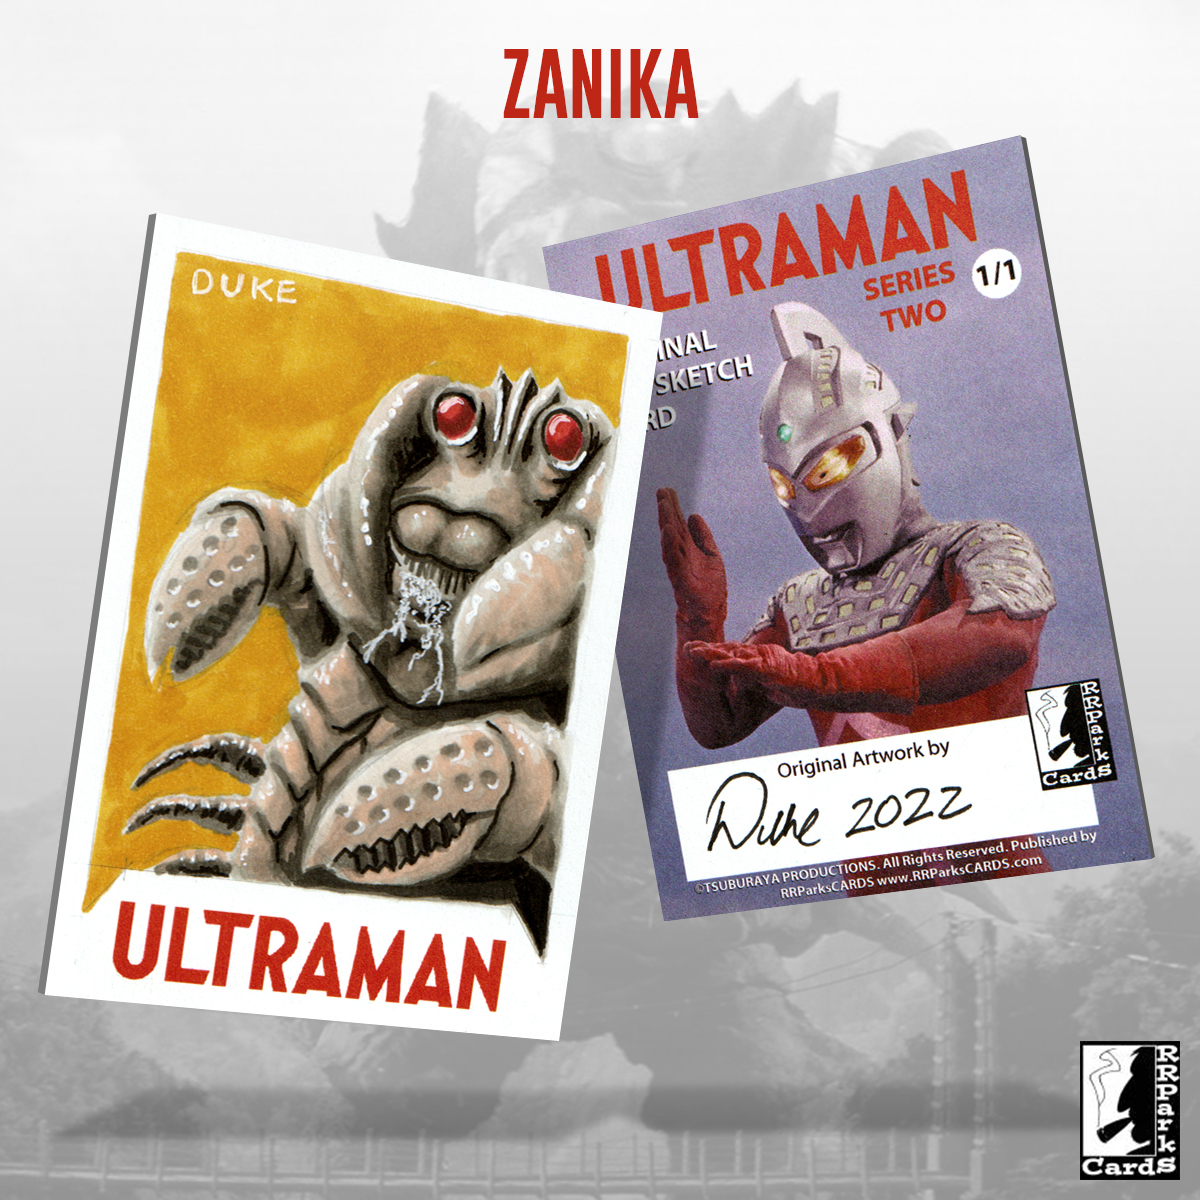 Ultraman Series 2 Zanika Sketch Card by Duke